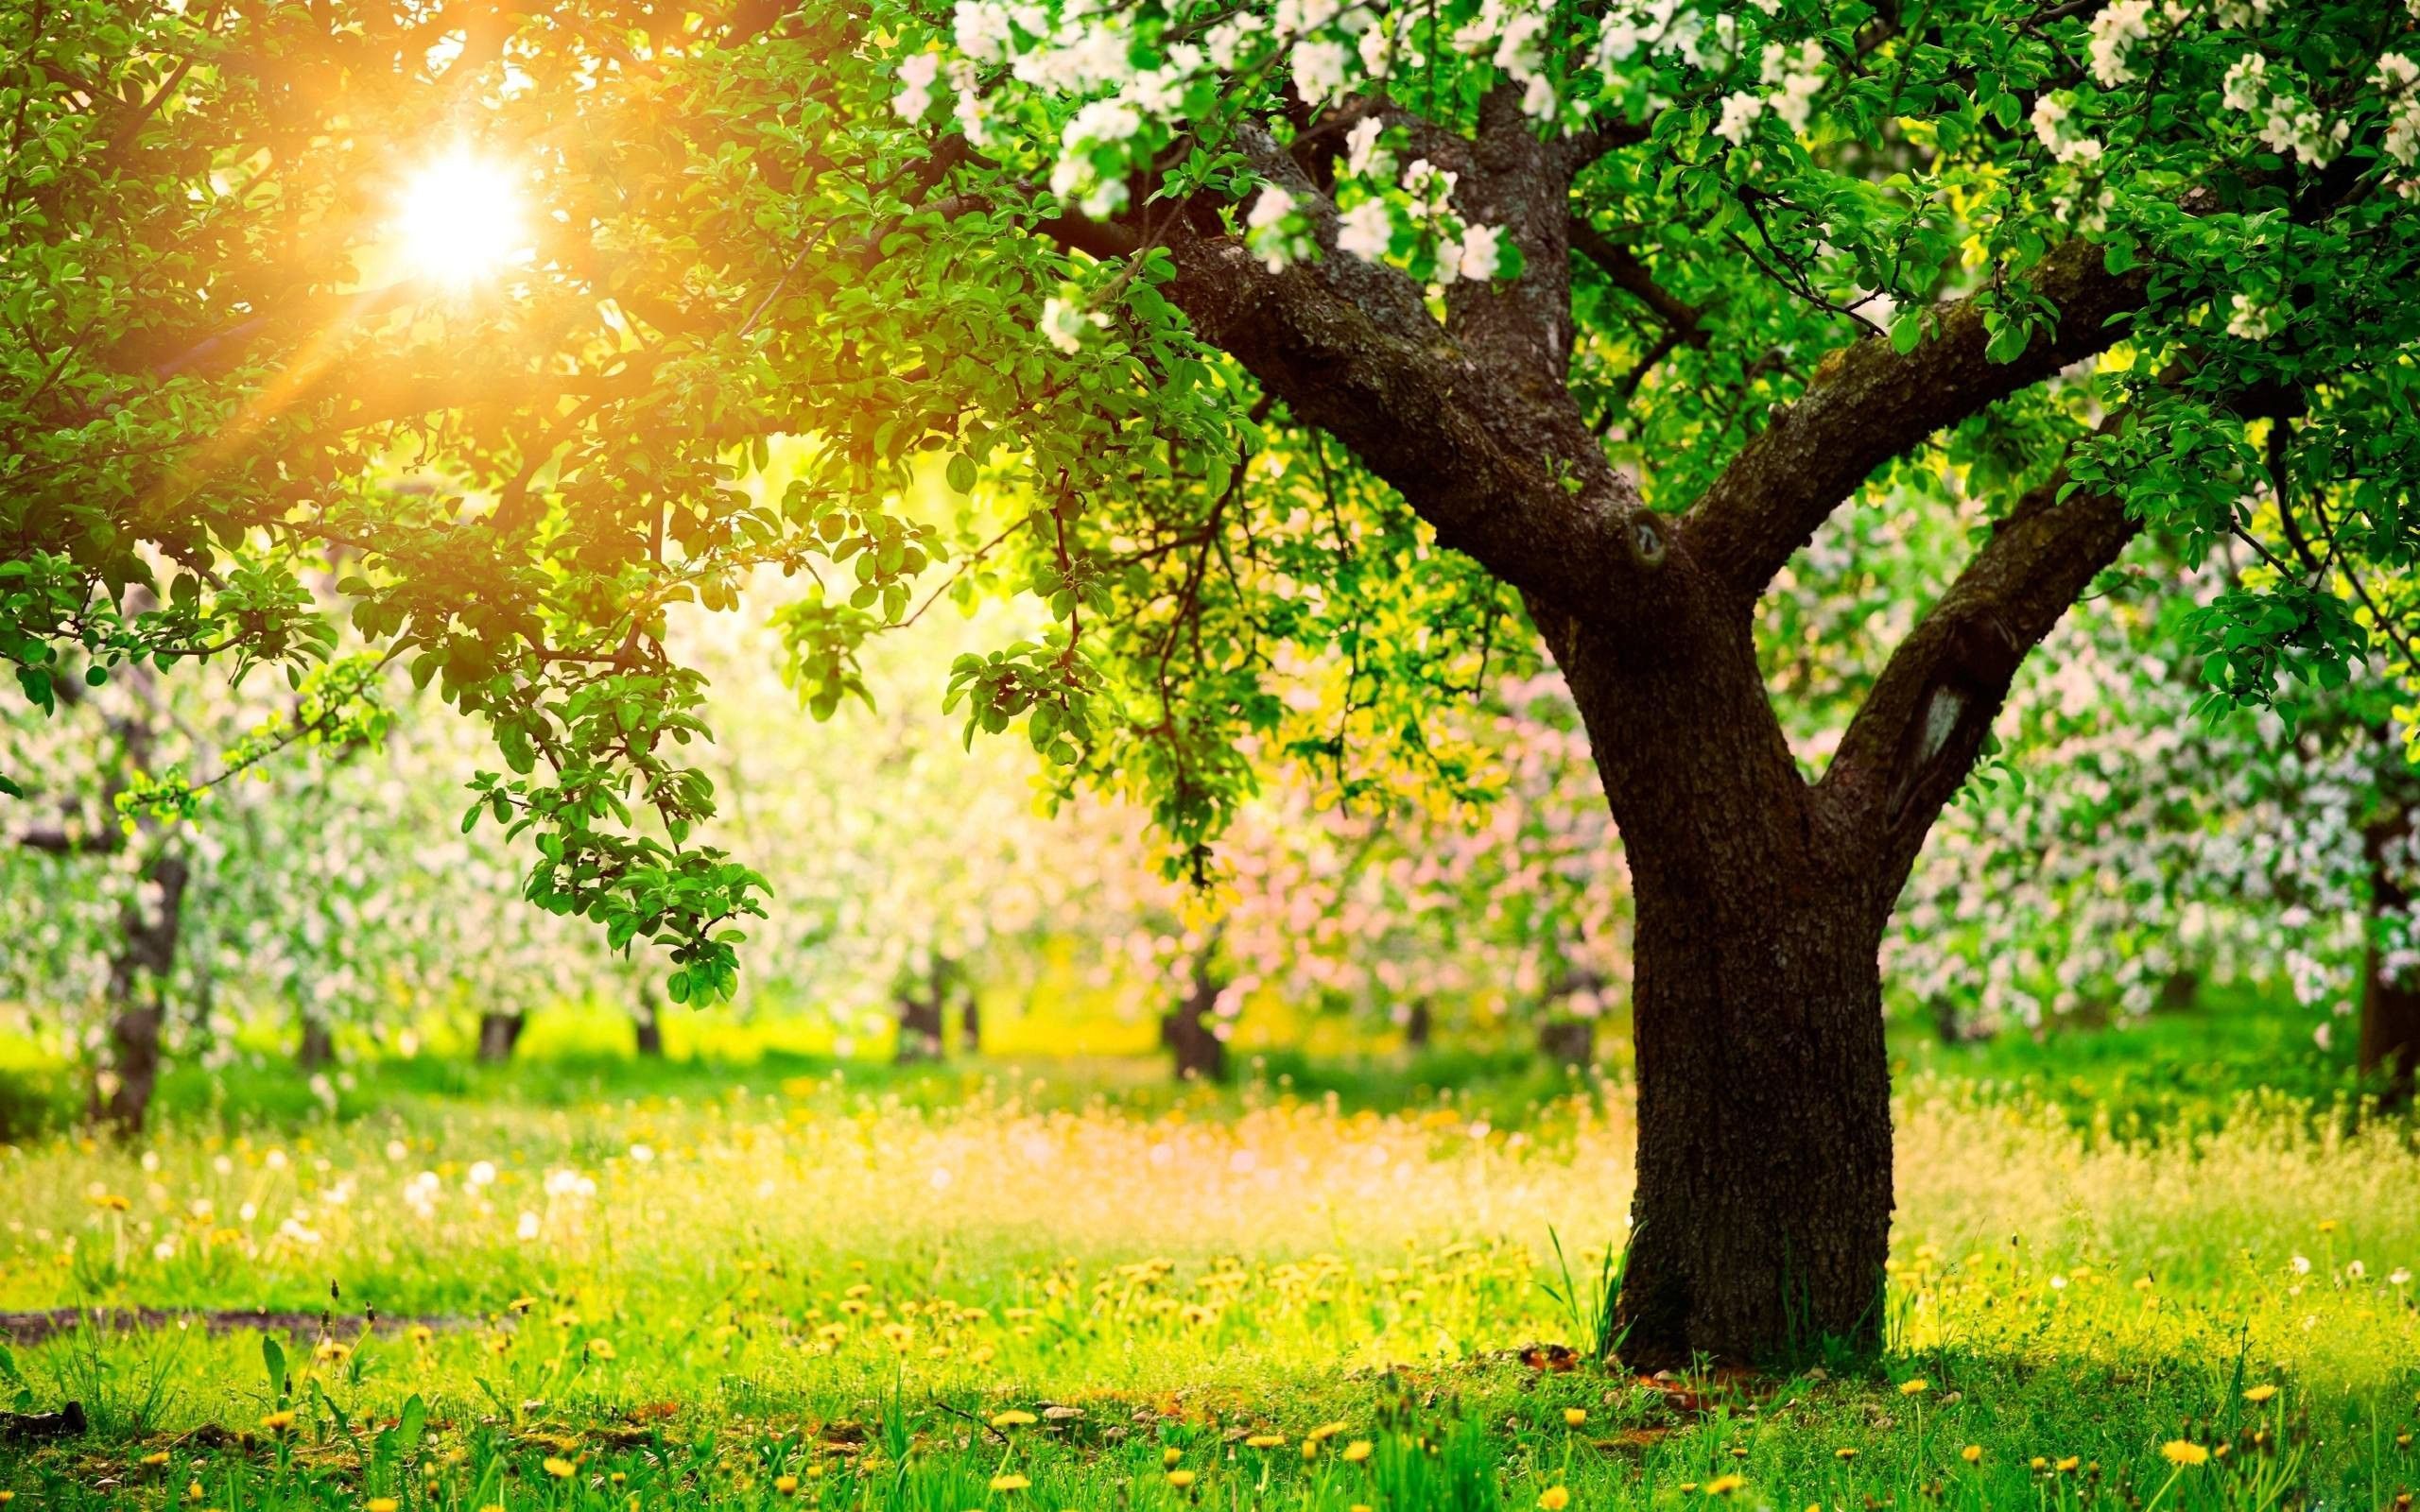 پس زمینه ی آفتابی از طبیعتی با درخت هایی پر از شکوفه رنگارنگ